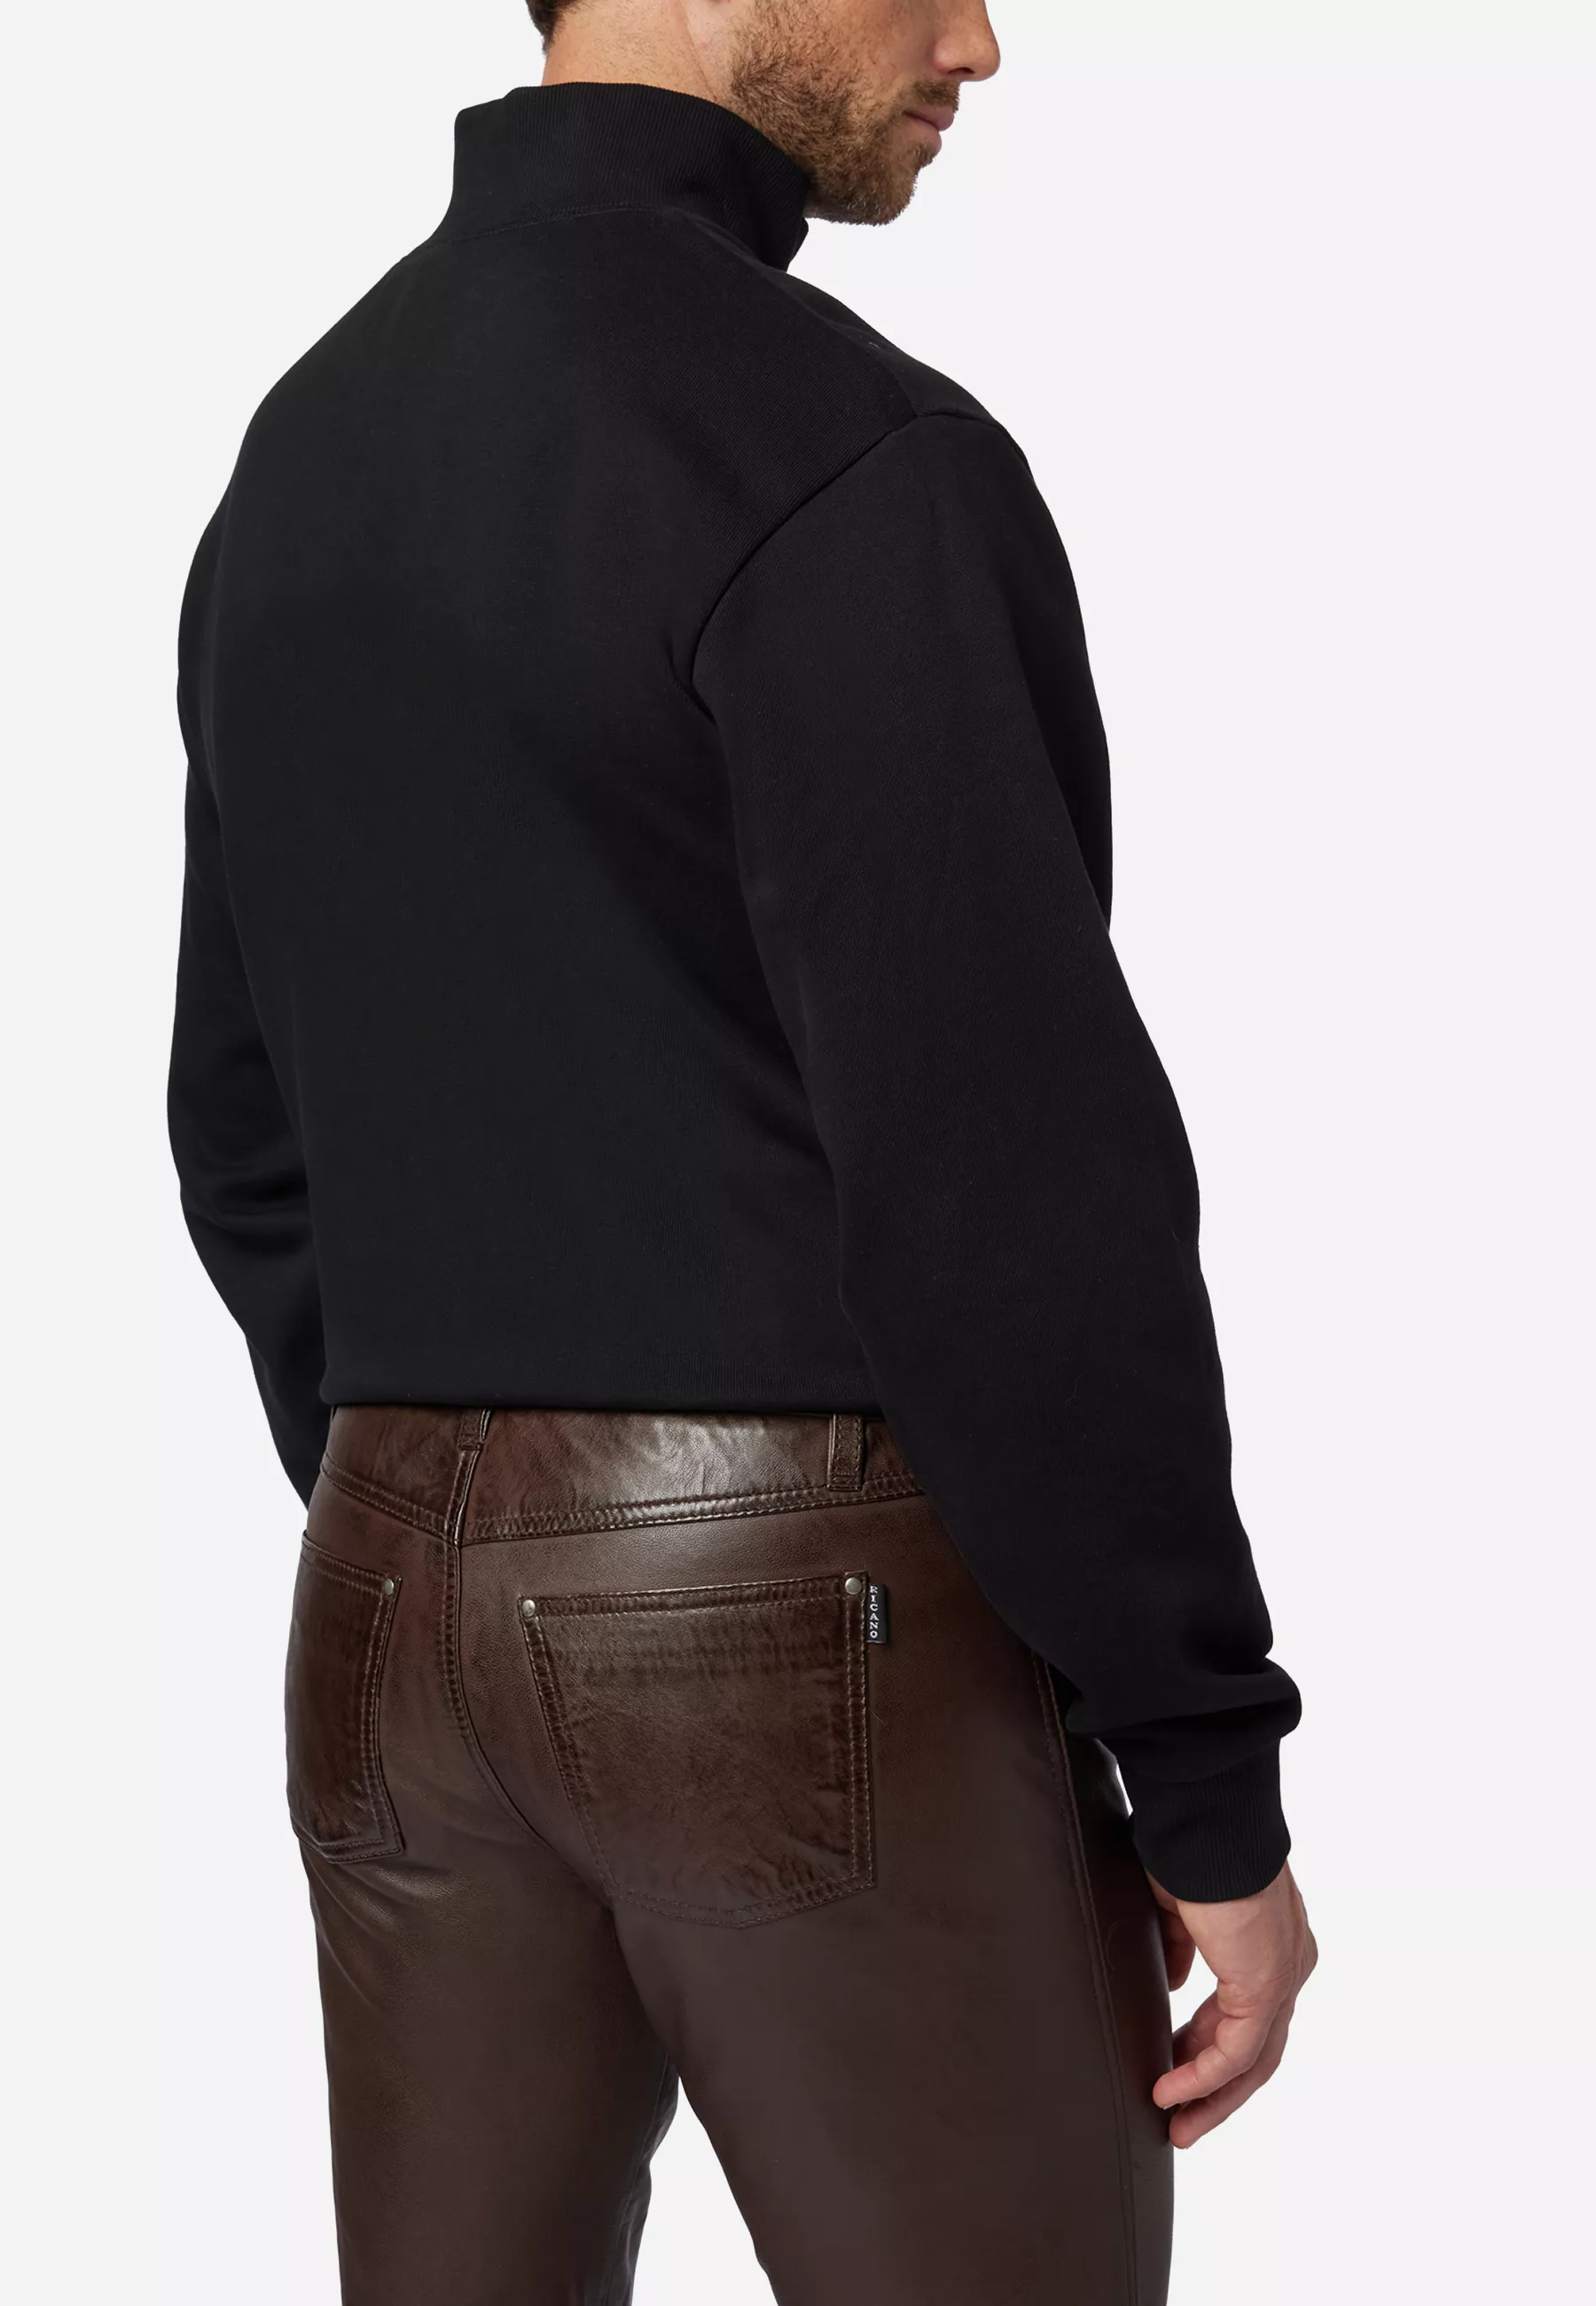 Herren Lederhose Slim Fit in Braun von Ricano, Detailansicht vom Five Pocket Look am Model